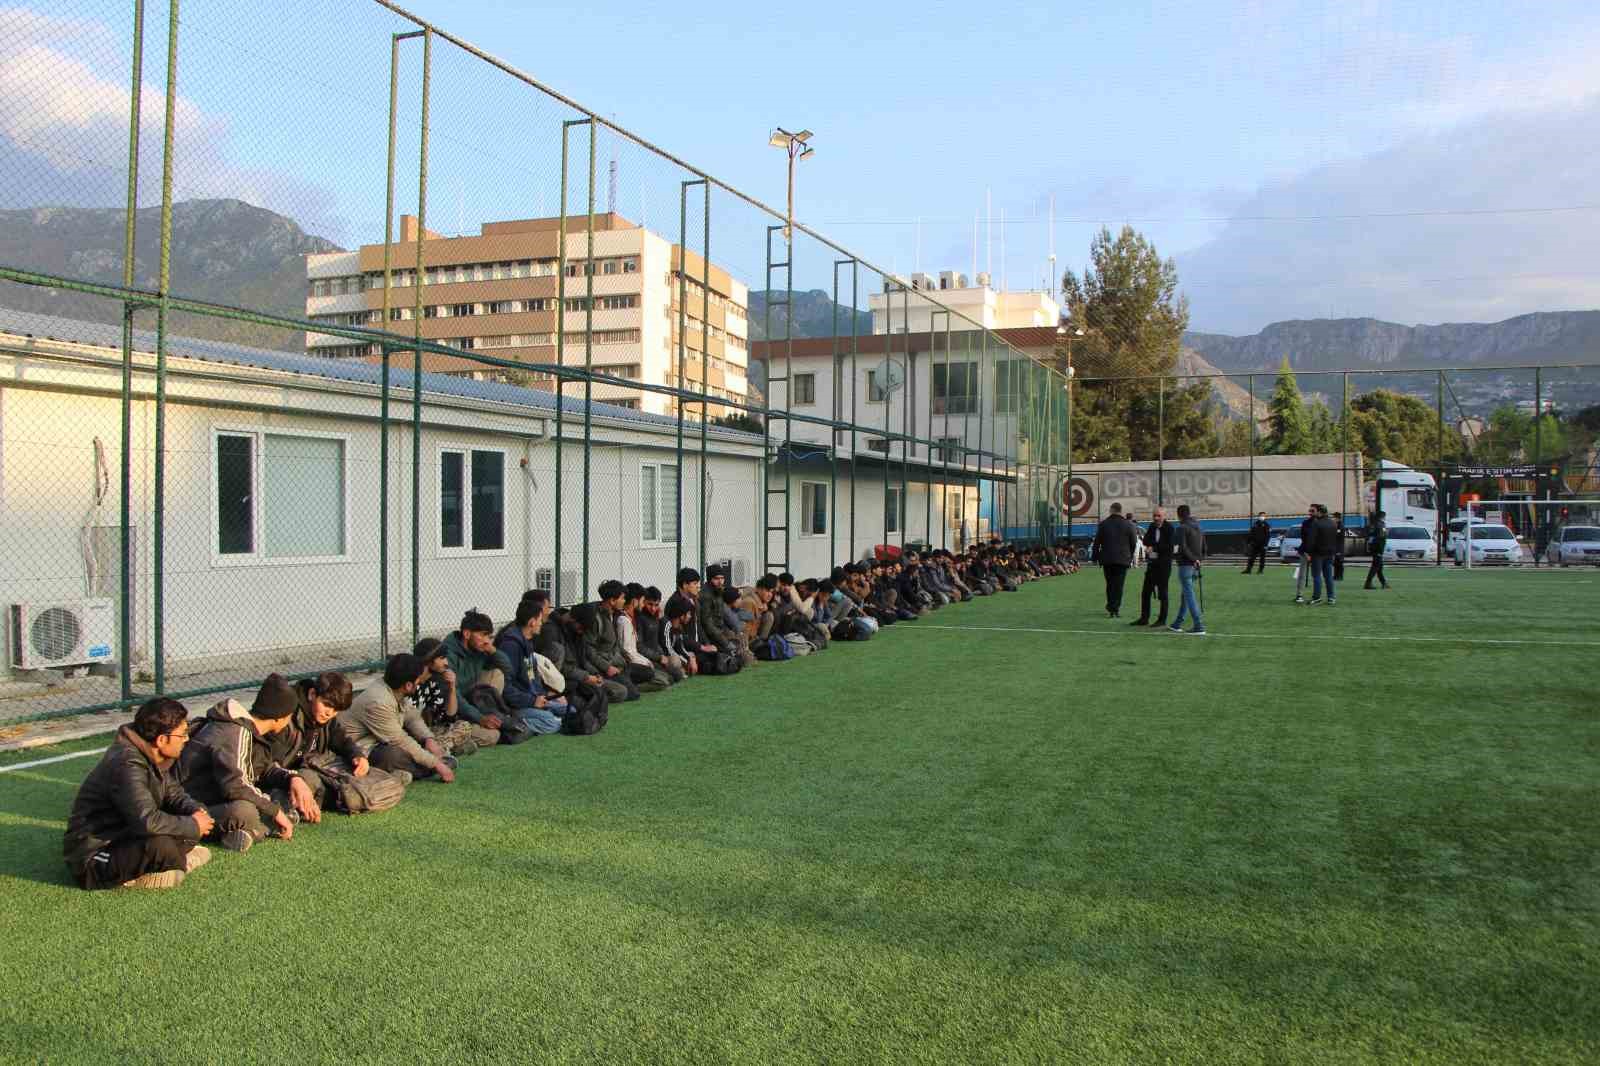 amasya’da bakır yüklü tırda 64 kaçak göçmen yakalandı